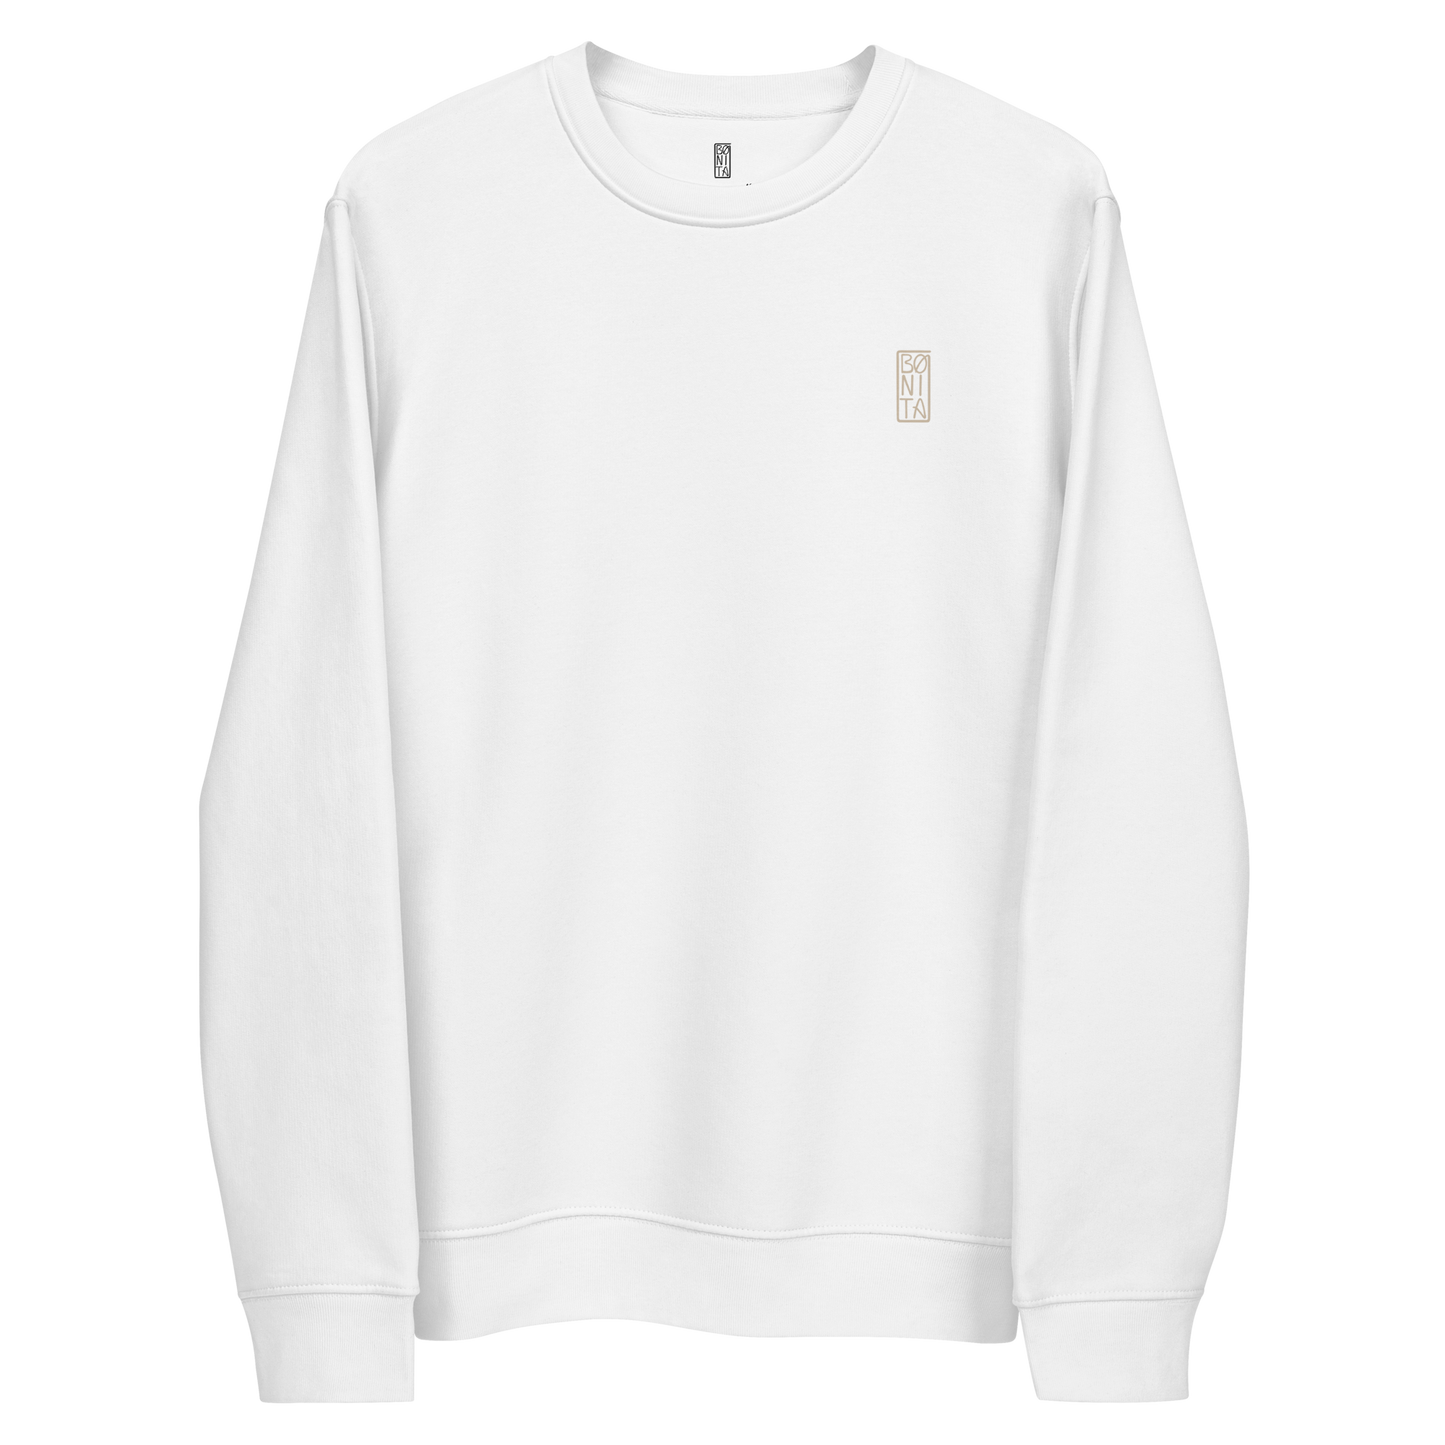 Karleth Mushroom Unisex Sweatshirt - White/Sand